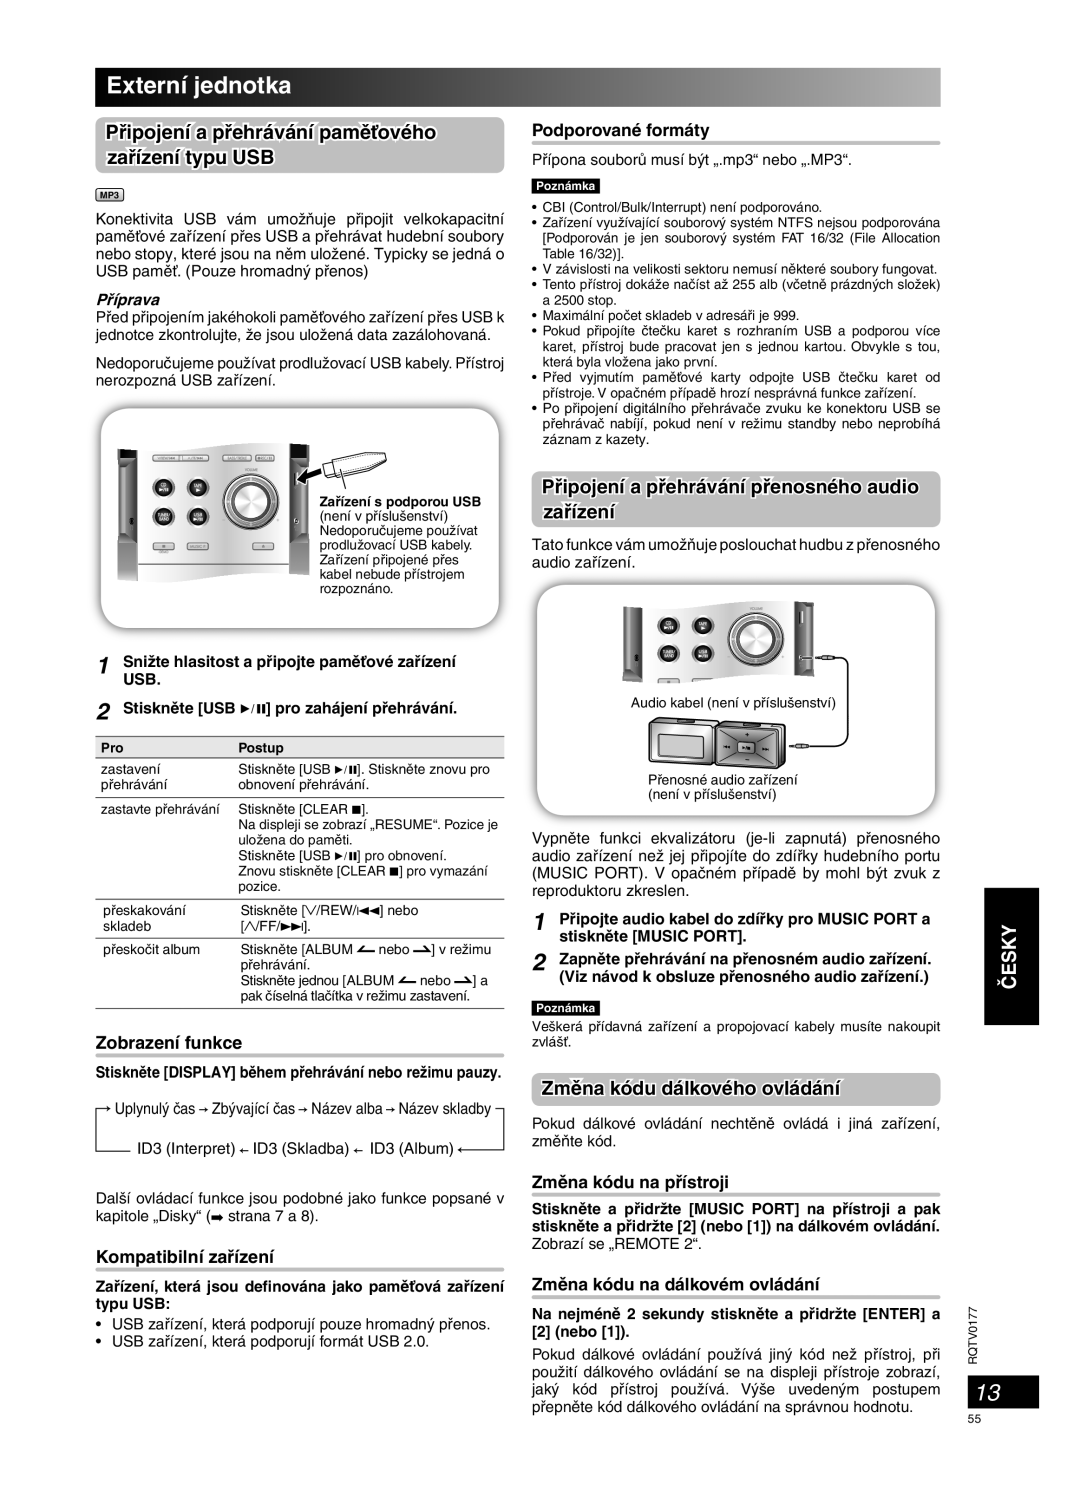 Panasonic SC-PM45 Externí jednotka, Pﬁipojení a pﬁehrávání pﬁenosného audio zaﬁízení, Zmûna kódu dálkového ovládání, âESKY 